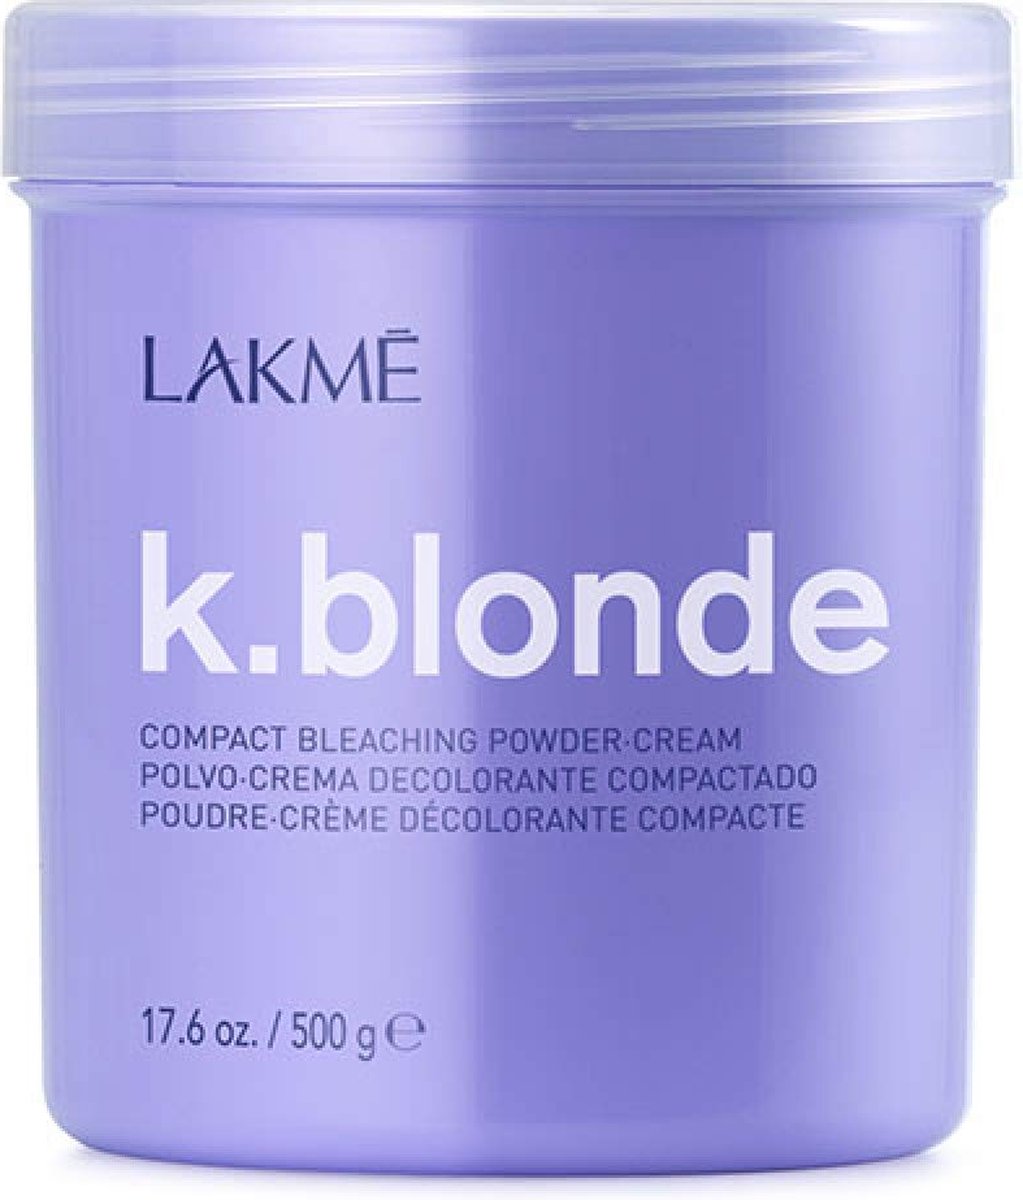 Verlichter Lakmé blonde Compact Bleaching 500 g In poedervorm